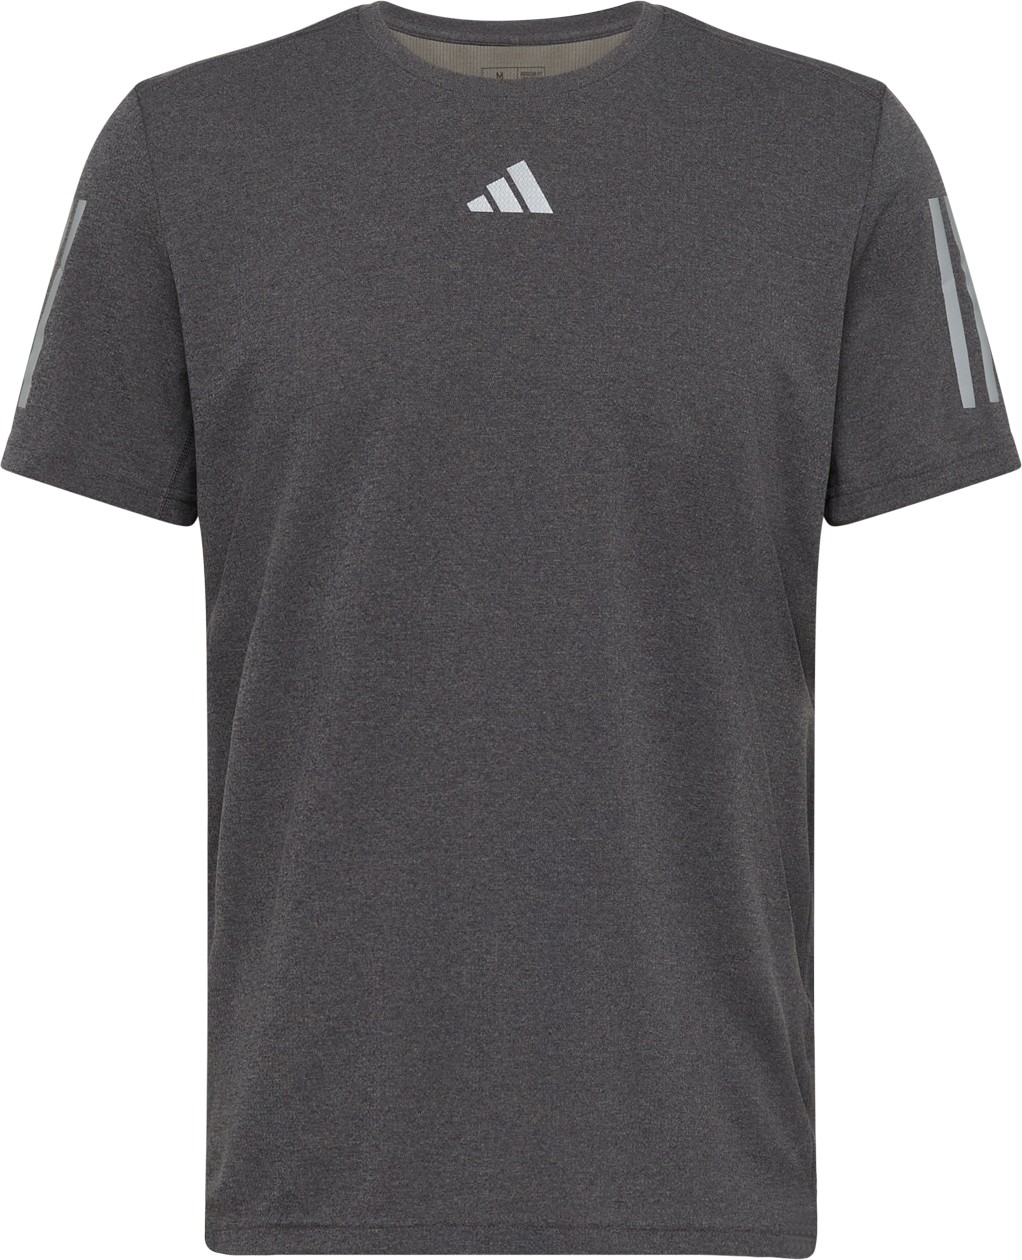 ADIDAS PERFORMANCE Funkční tričko světle šedá / černý melír